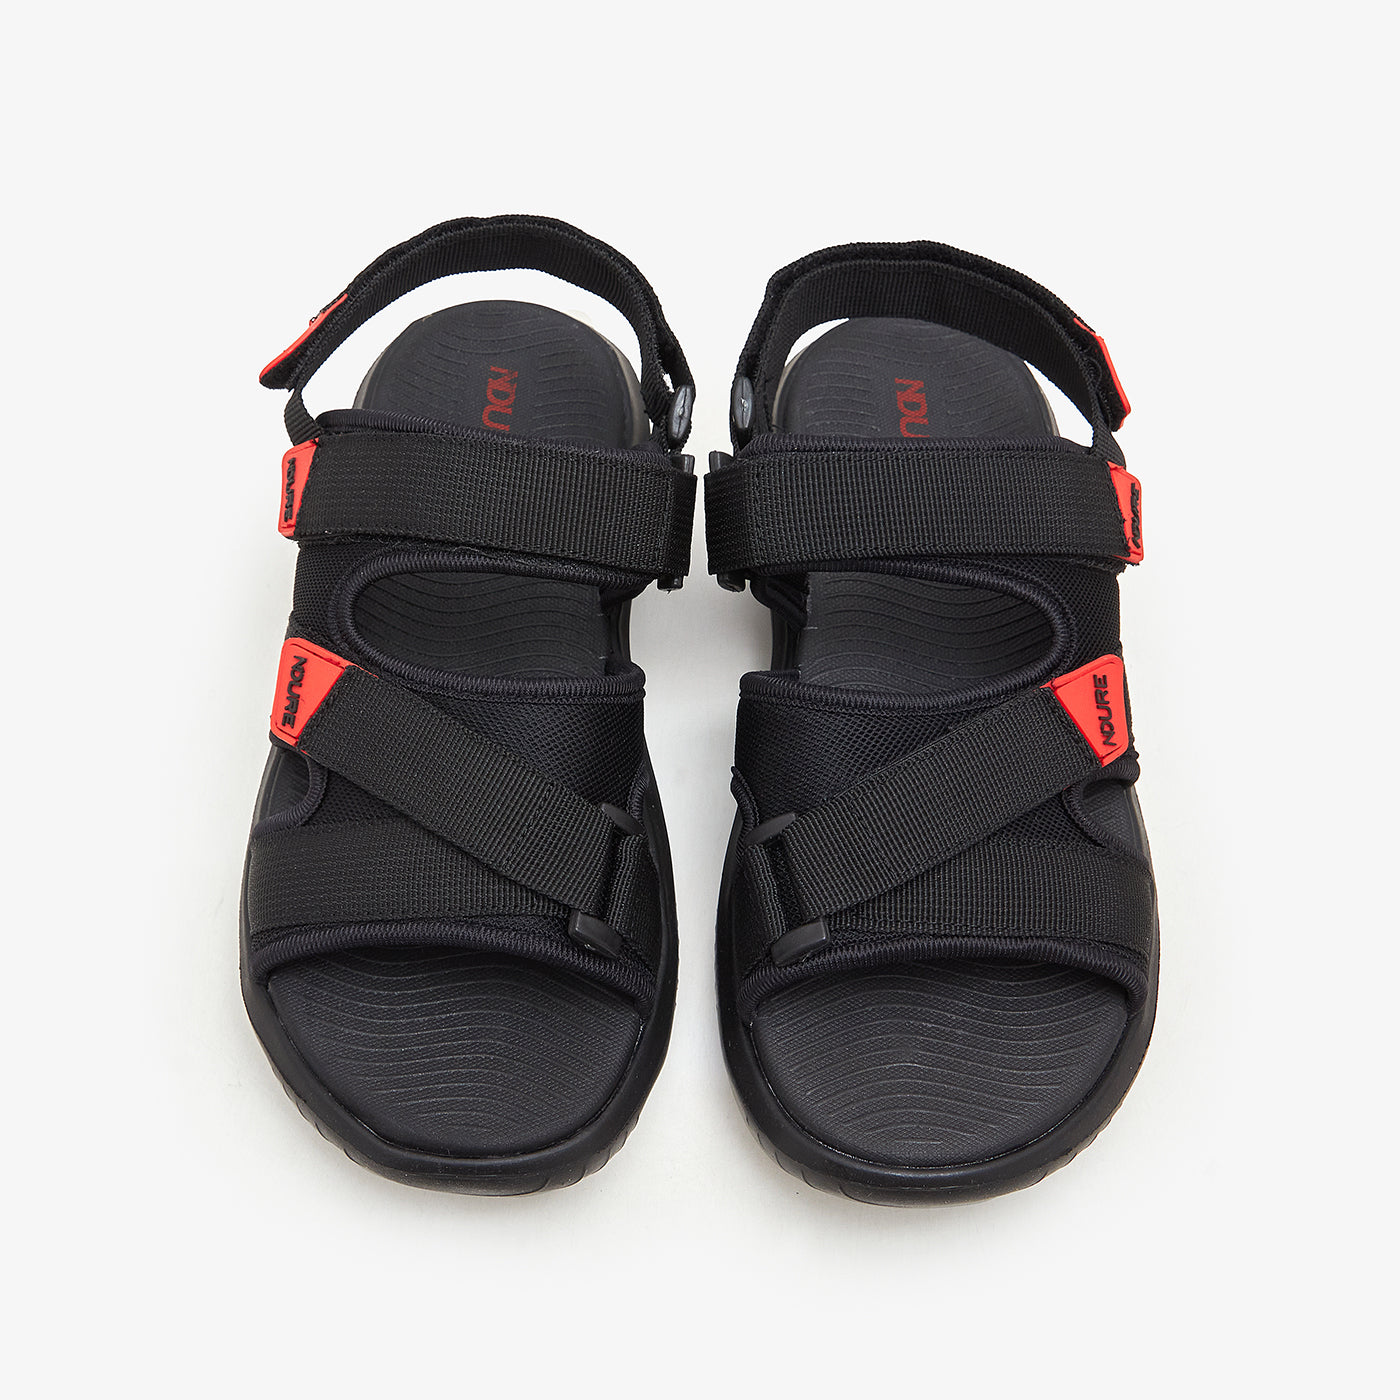 Buy Men Sandals & Peshawaris - Men's Multi-Colored Sandals M-AT-BOX ...